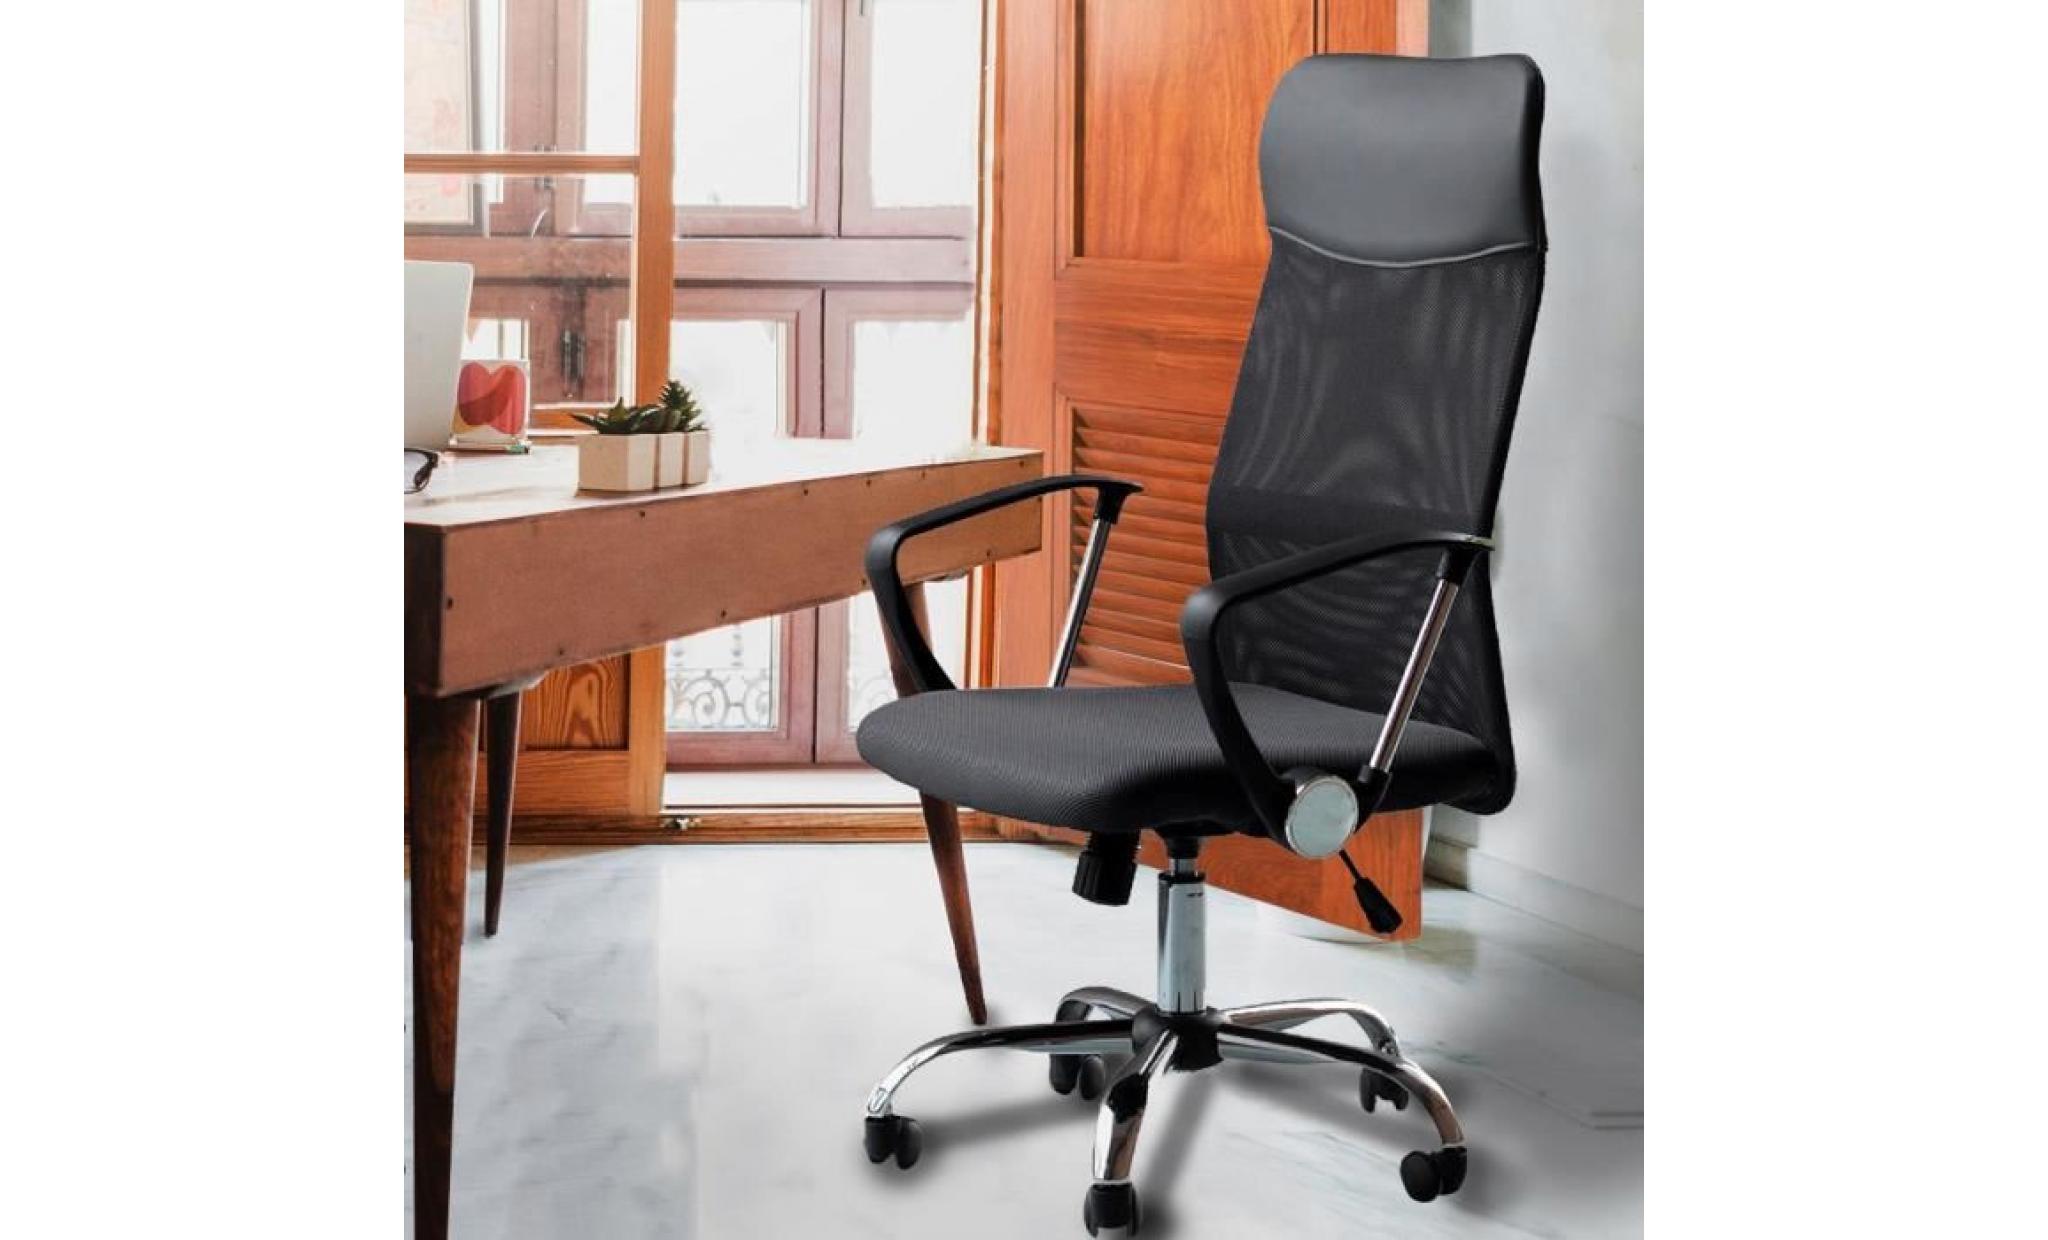 luxs chaise de bureau confortable fauteuil de direction siège ergonomique avec accoudoirs pliables hauteur réglable pas cher